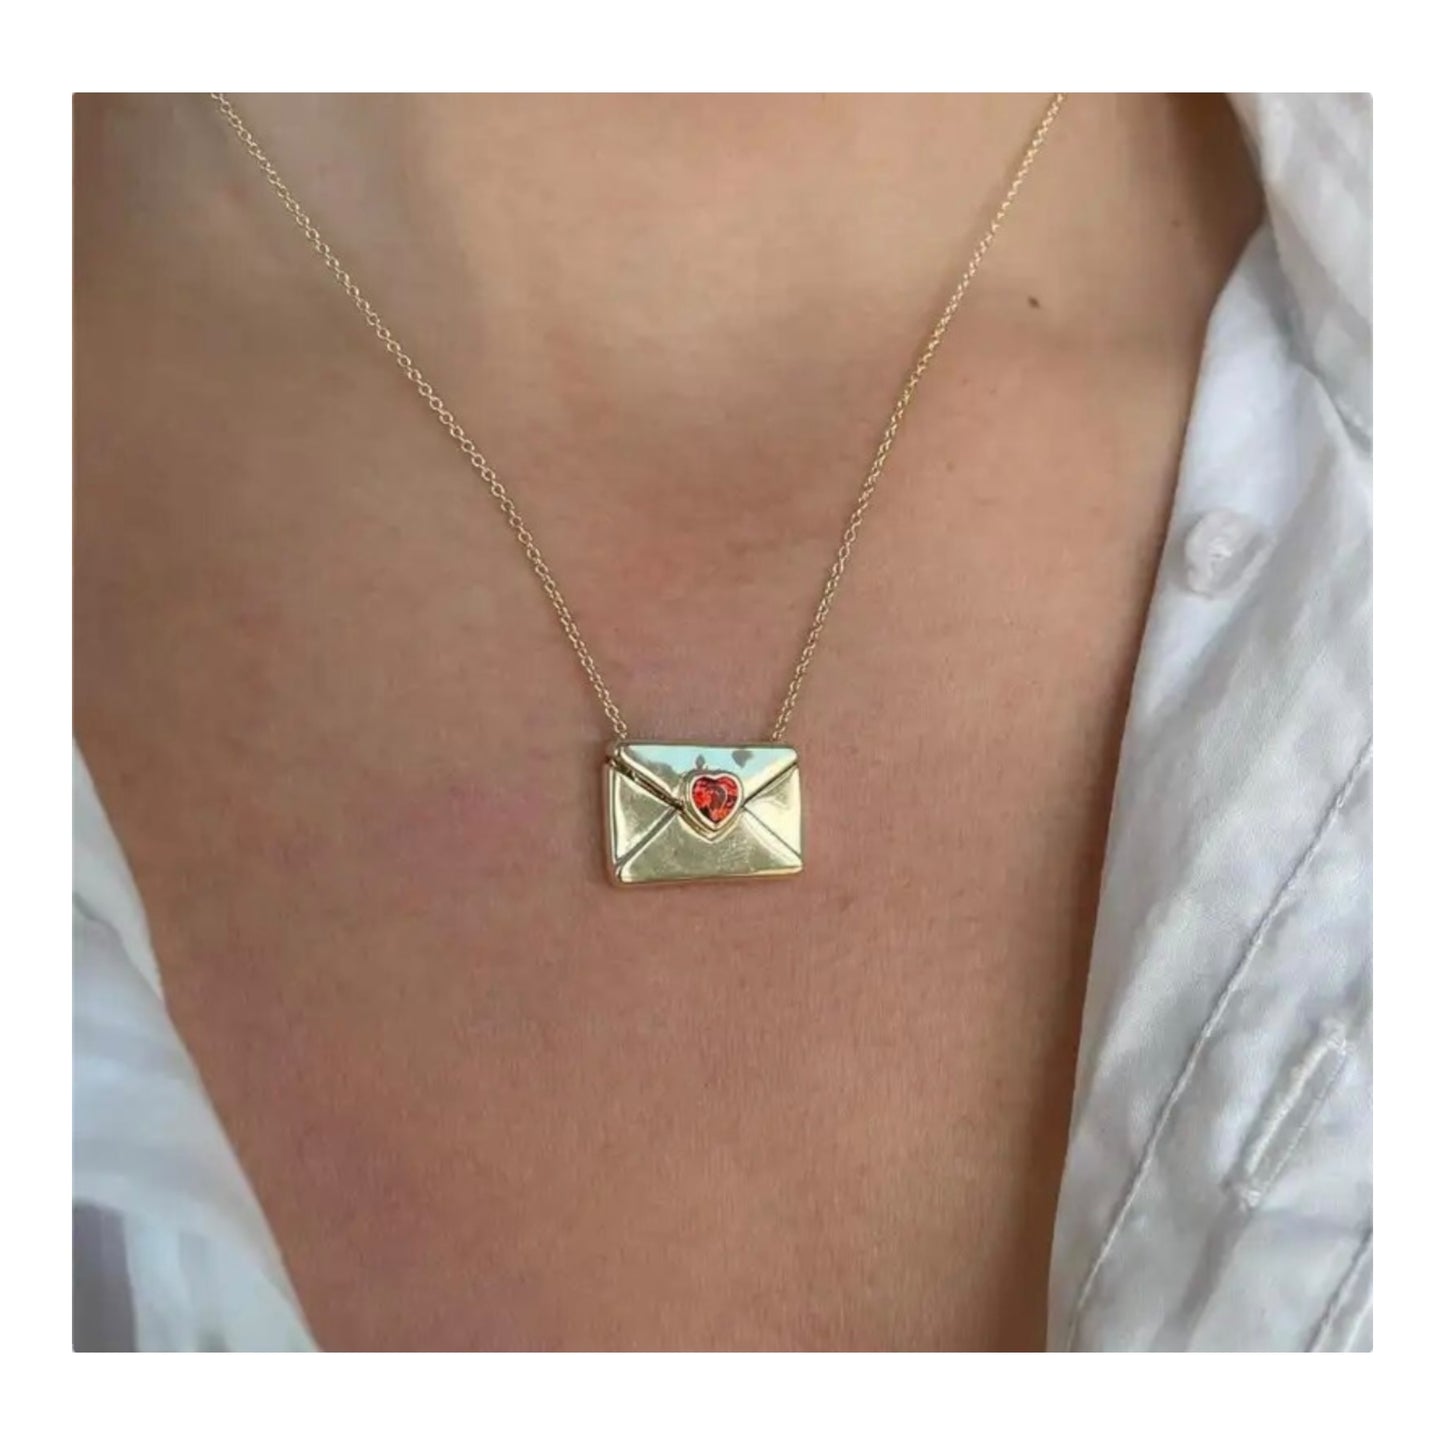 “I love you” envelope locket necklace